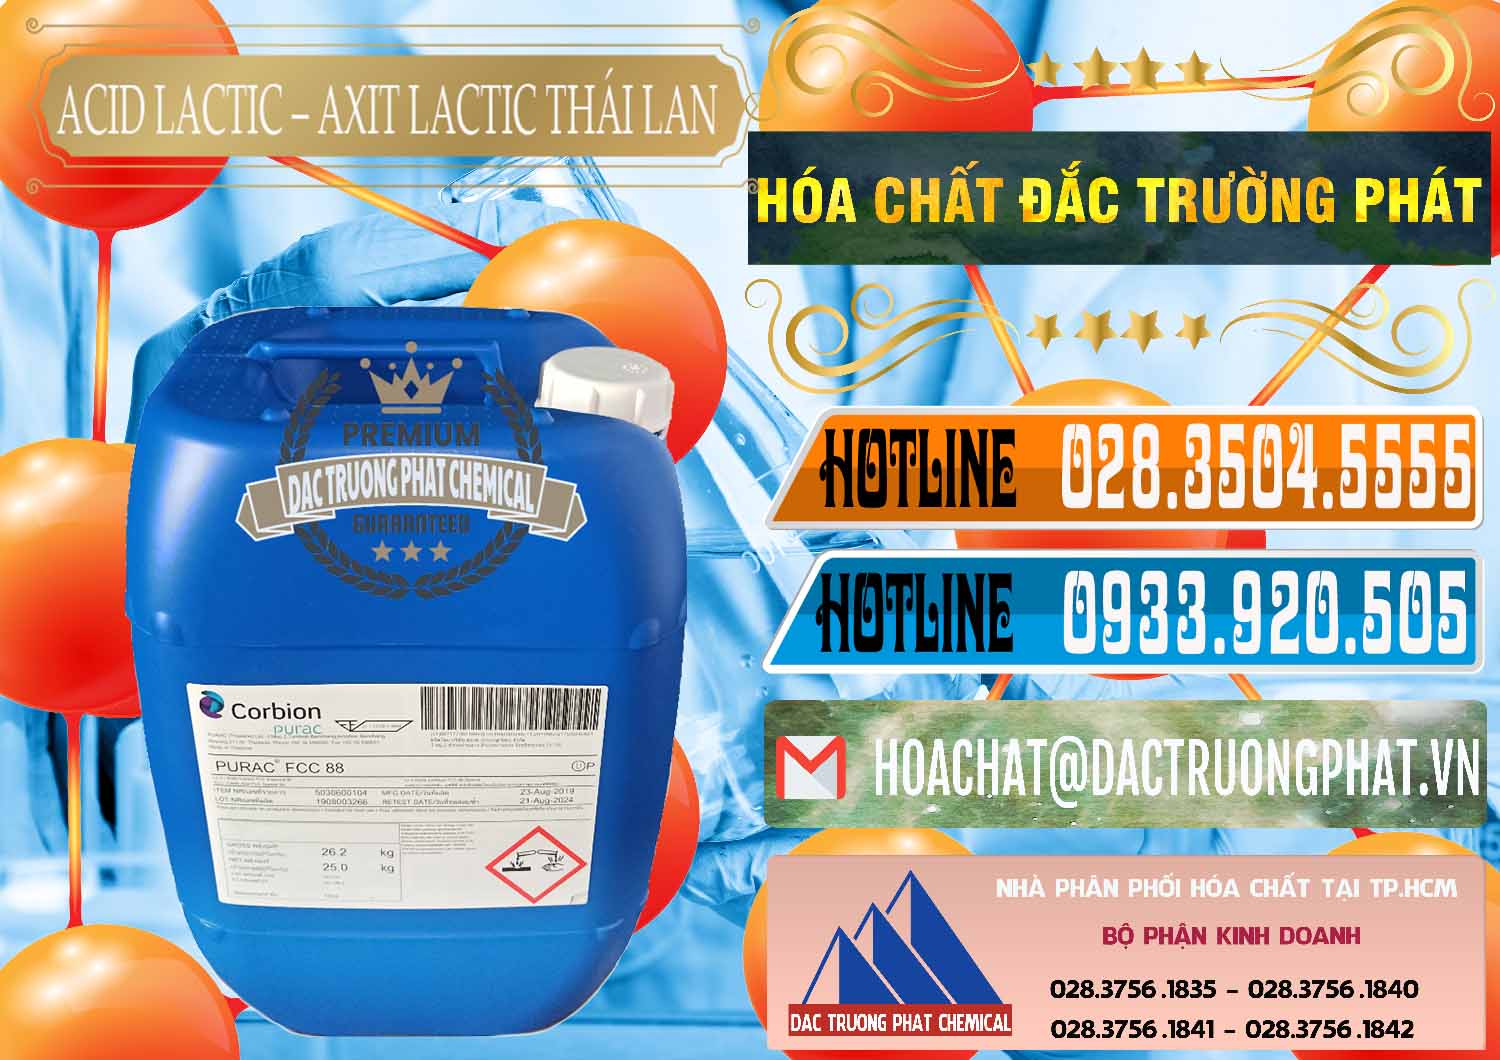 Nơi kinh doanh và bán Acid Lactic – Axit Lactic Thái Lan Purac FCC 88 - 0012 - Cty chuyên phân phối _ bán hóa chất tại TP.HCM - stmp.net